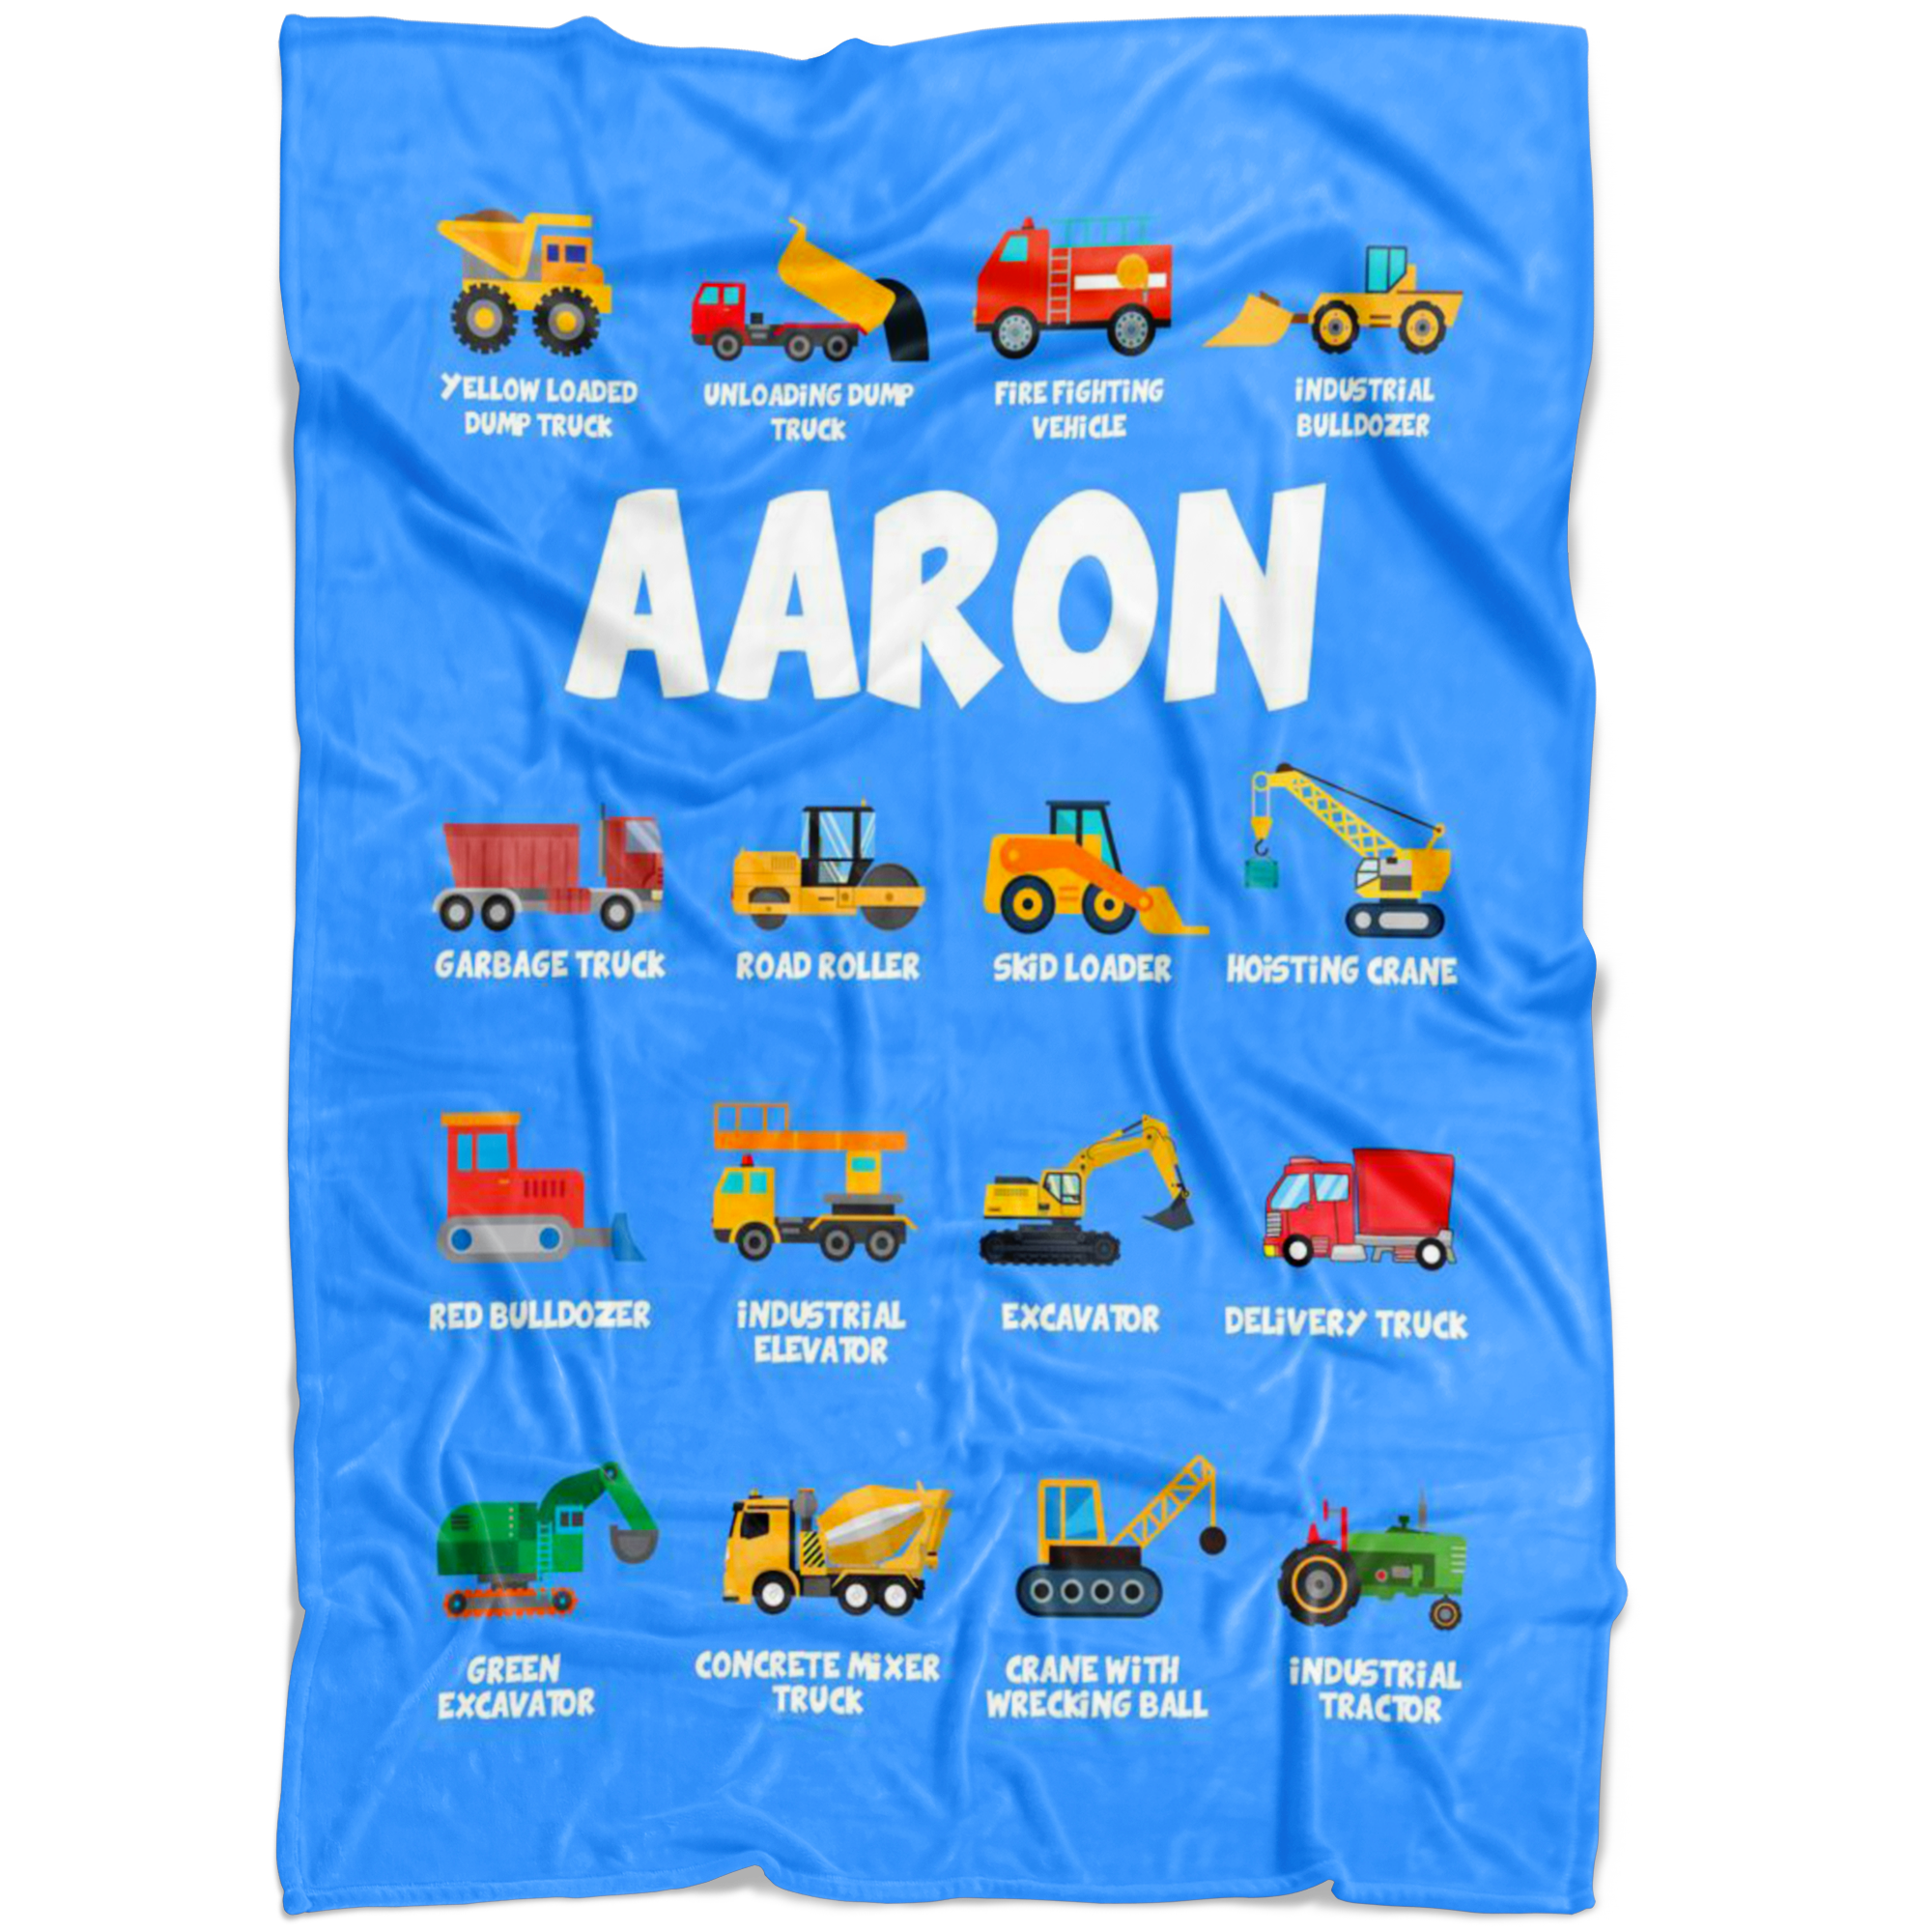 Aaron Construction Blanket Blue